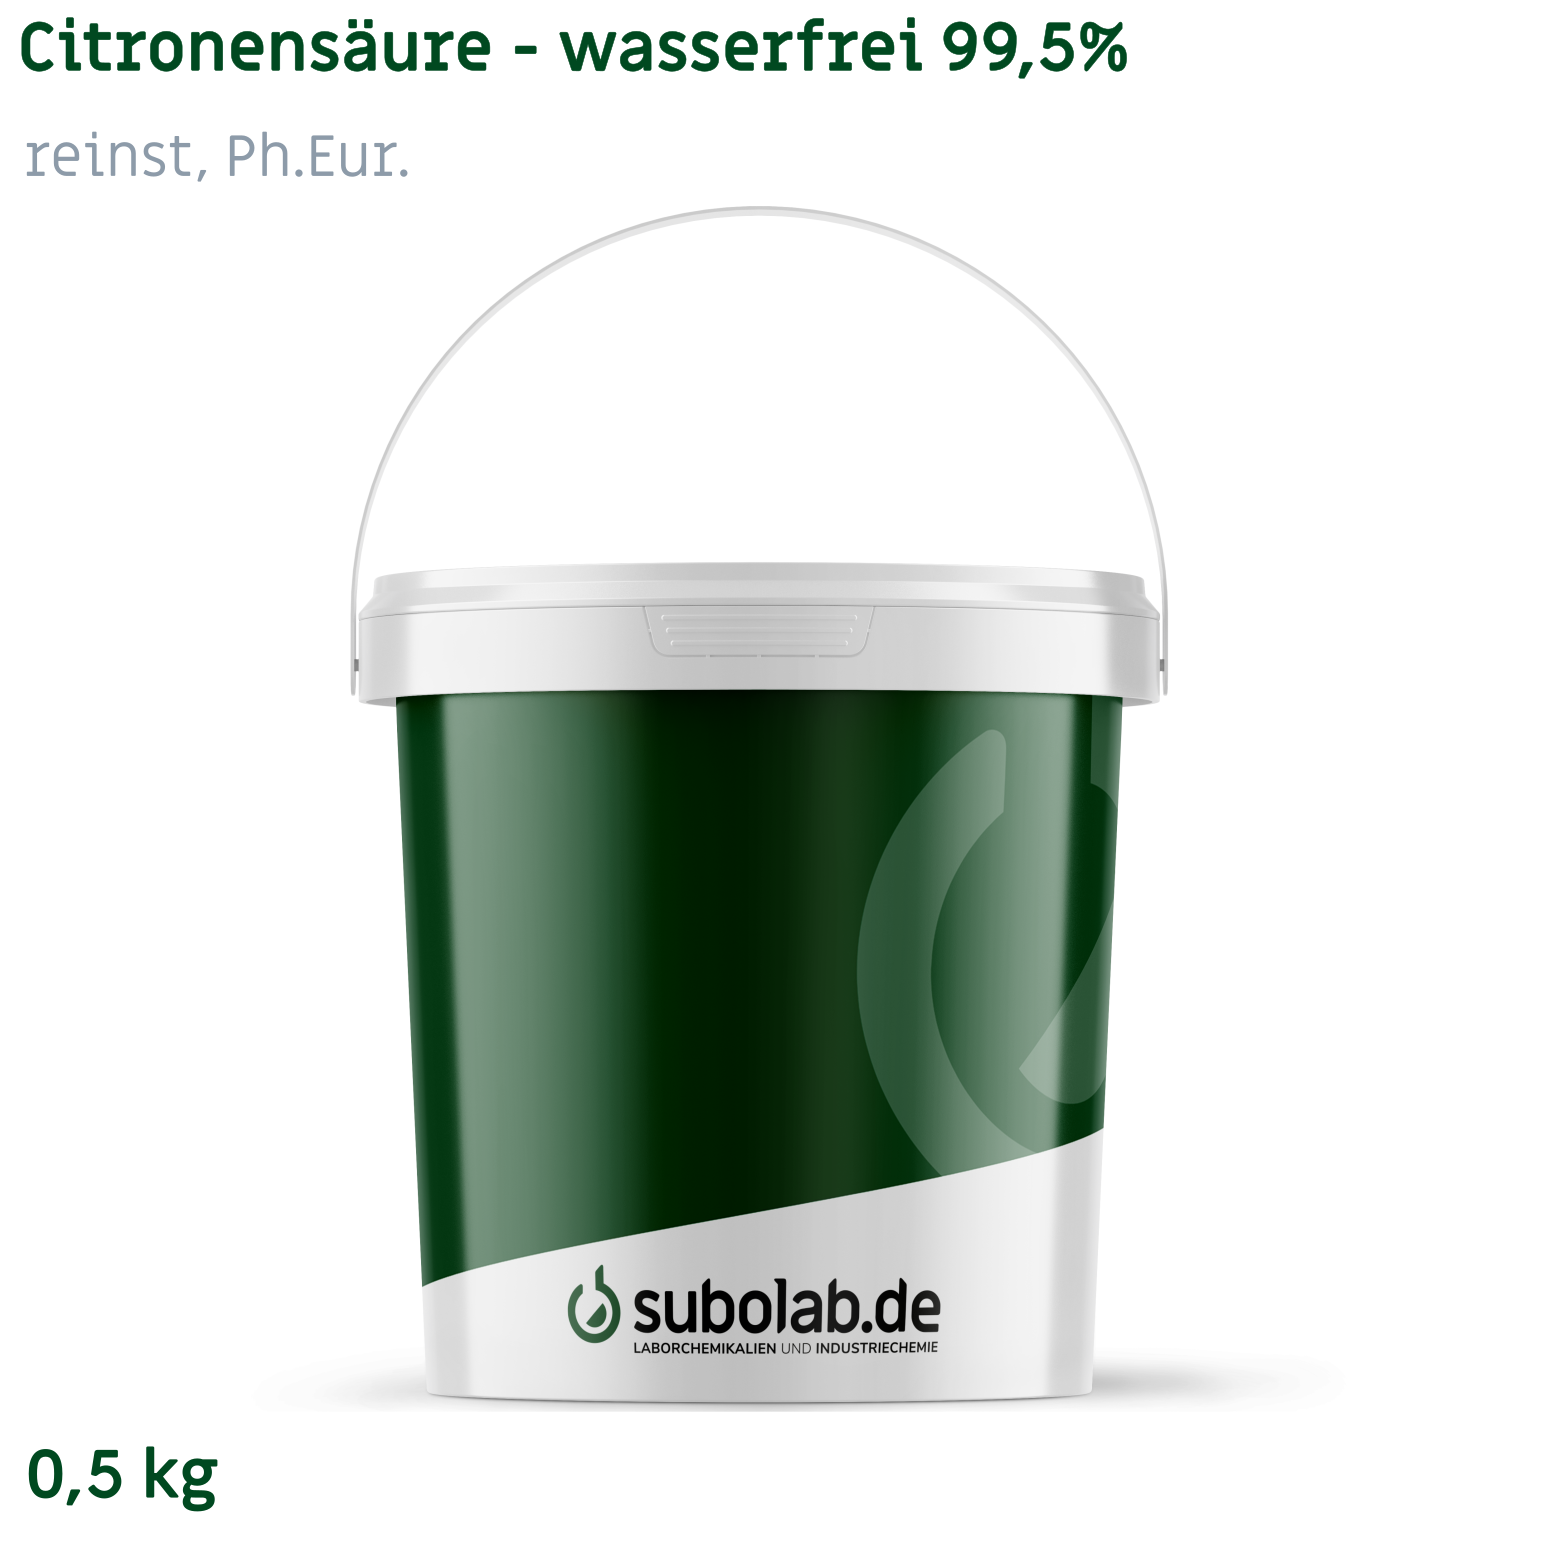 Bild von Citronensäure - wasserfrei 99,5% reinst, Ph.Eur. (0,5 kg)